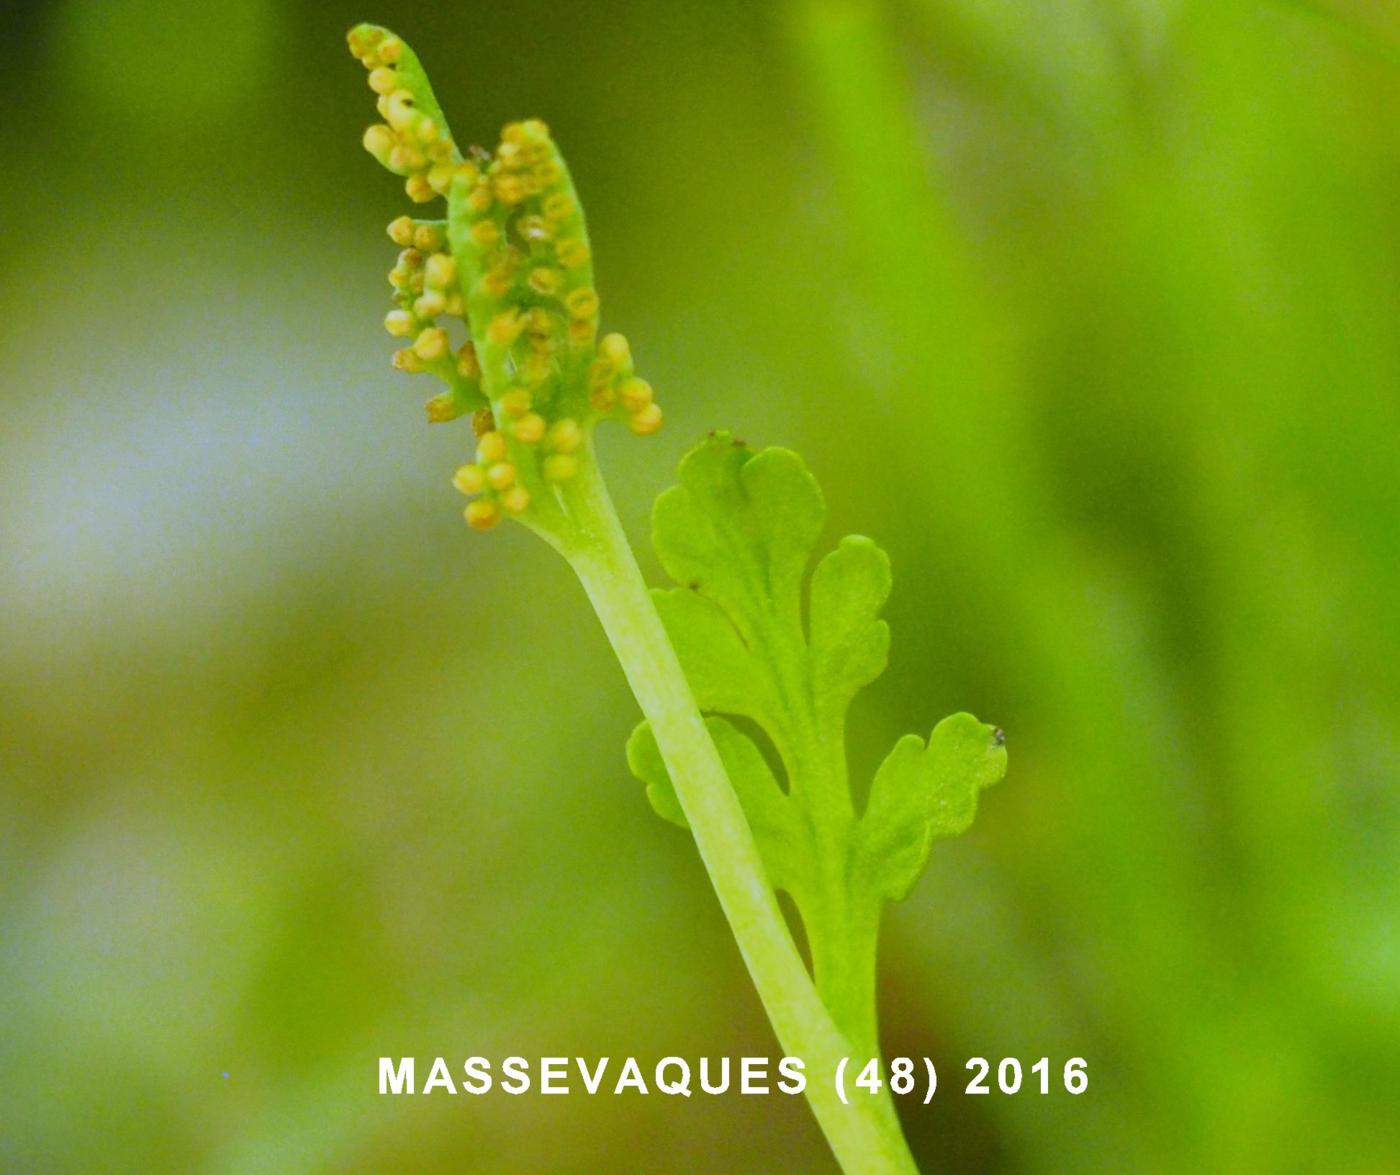 Moonwort, Daisy-leaved leaf